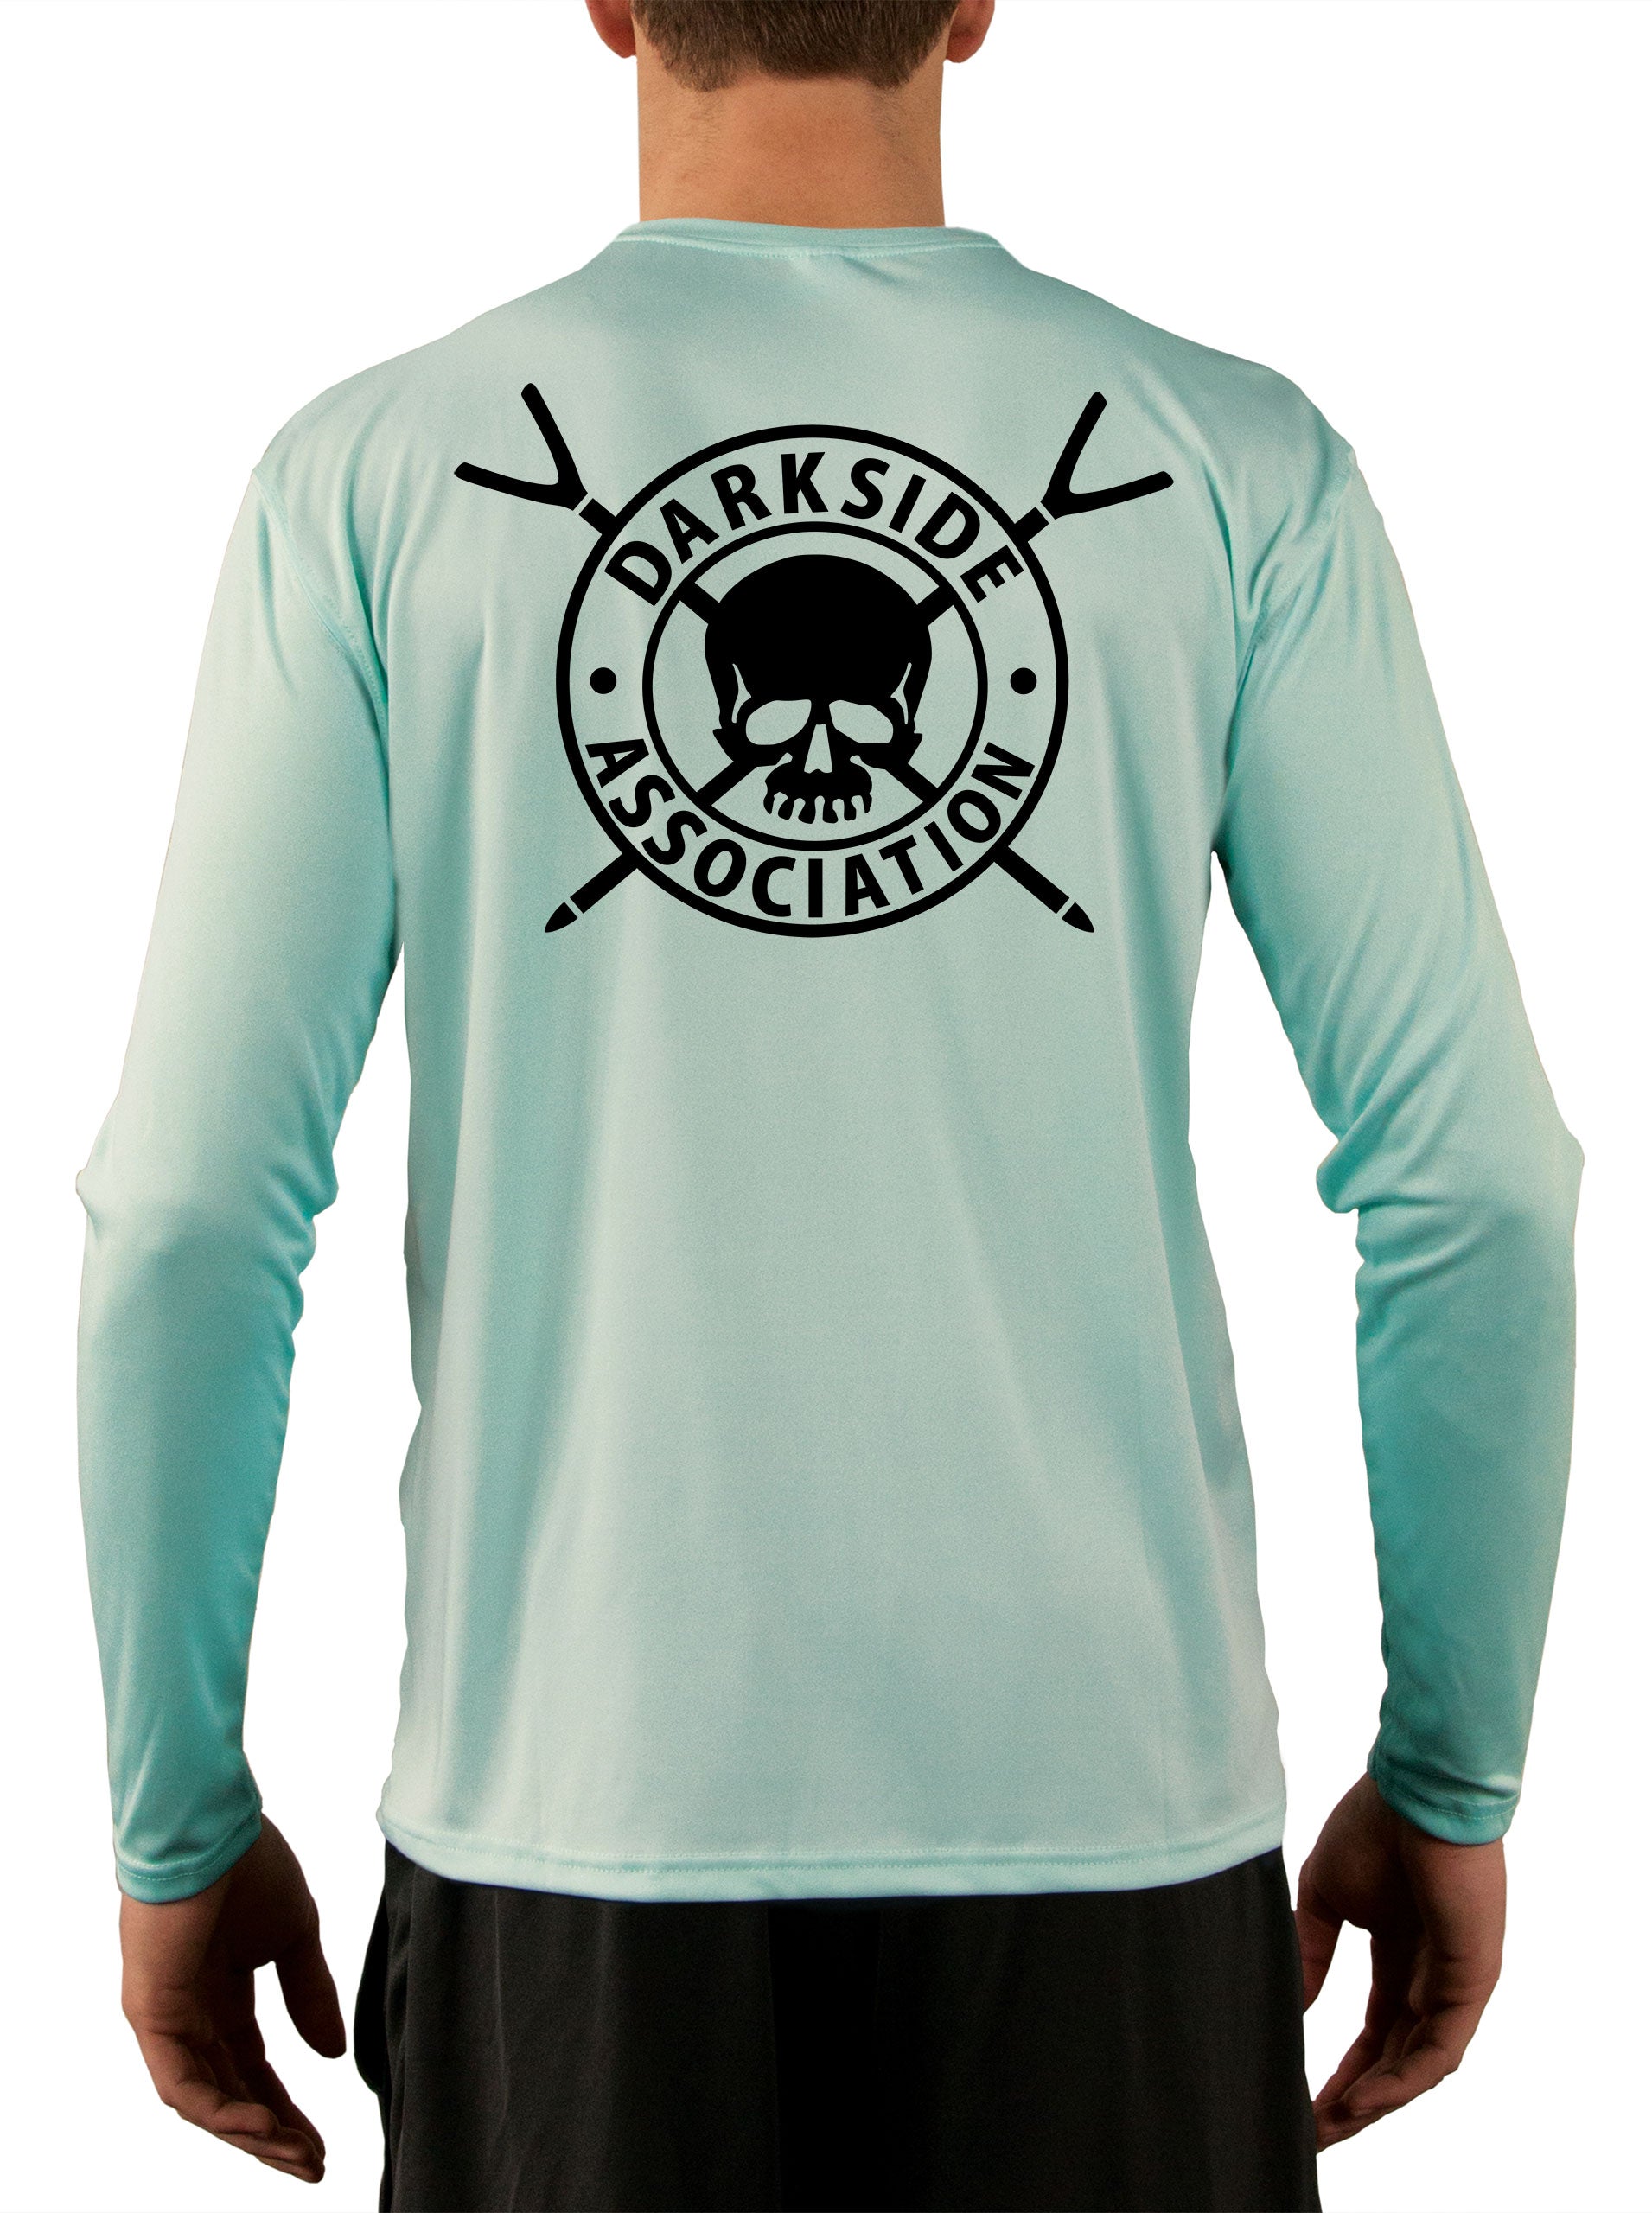 Darkside Association Skiff Fishing Shirts For Men – Skiff Life